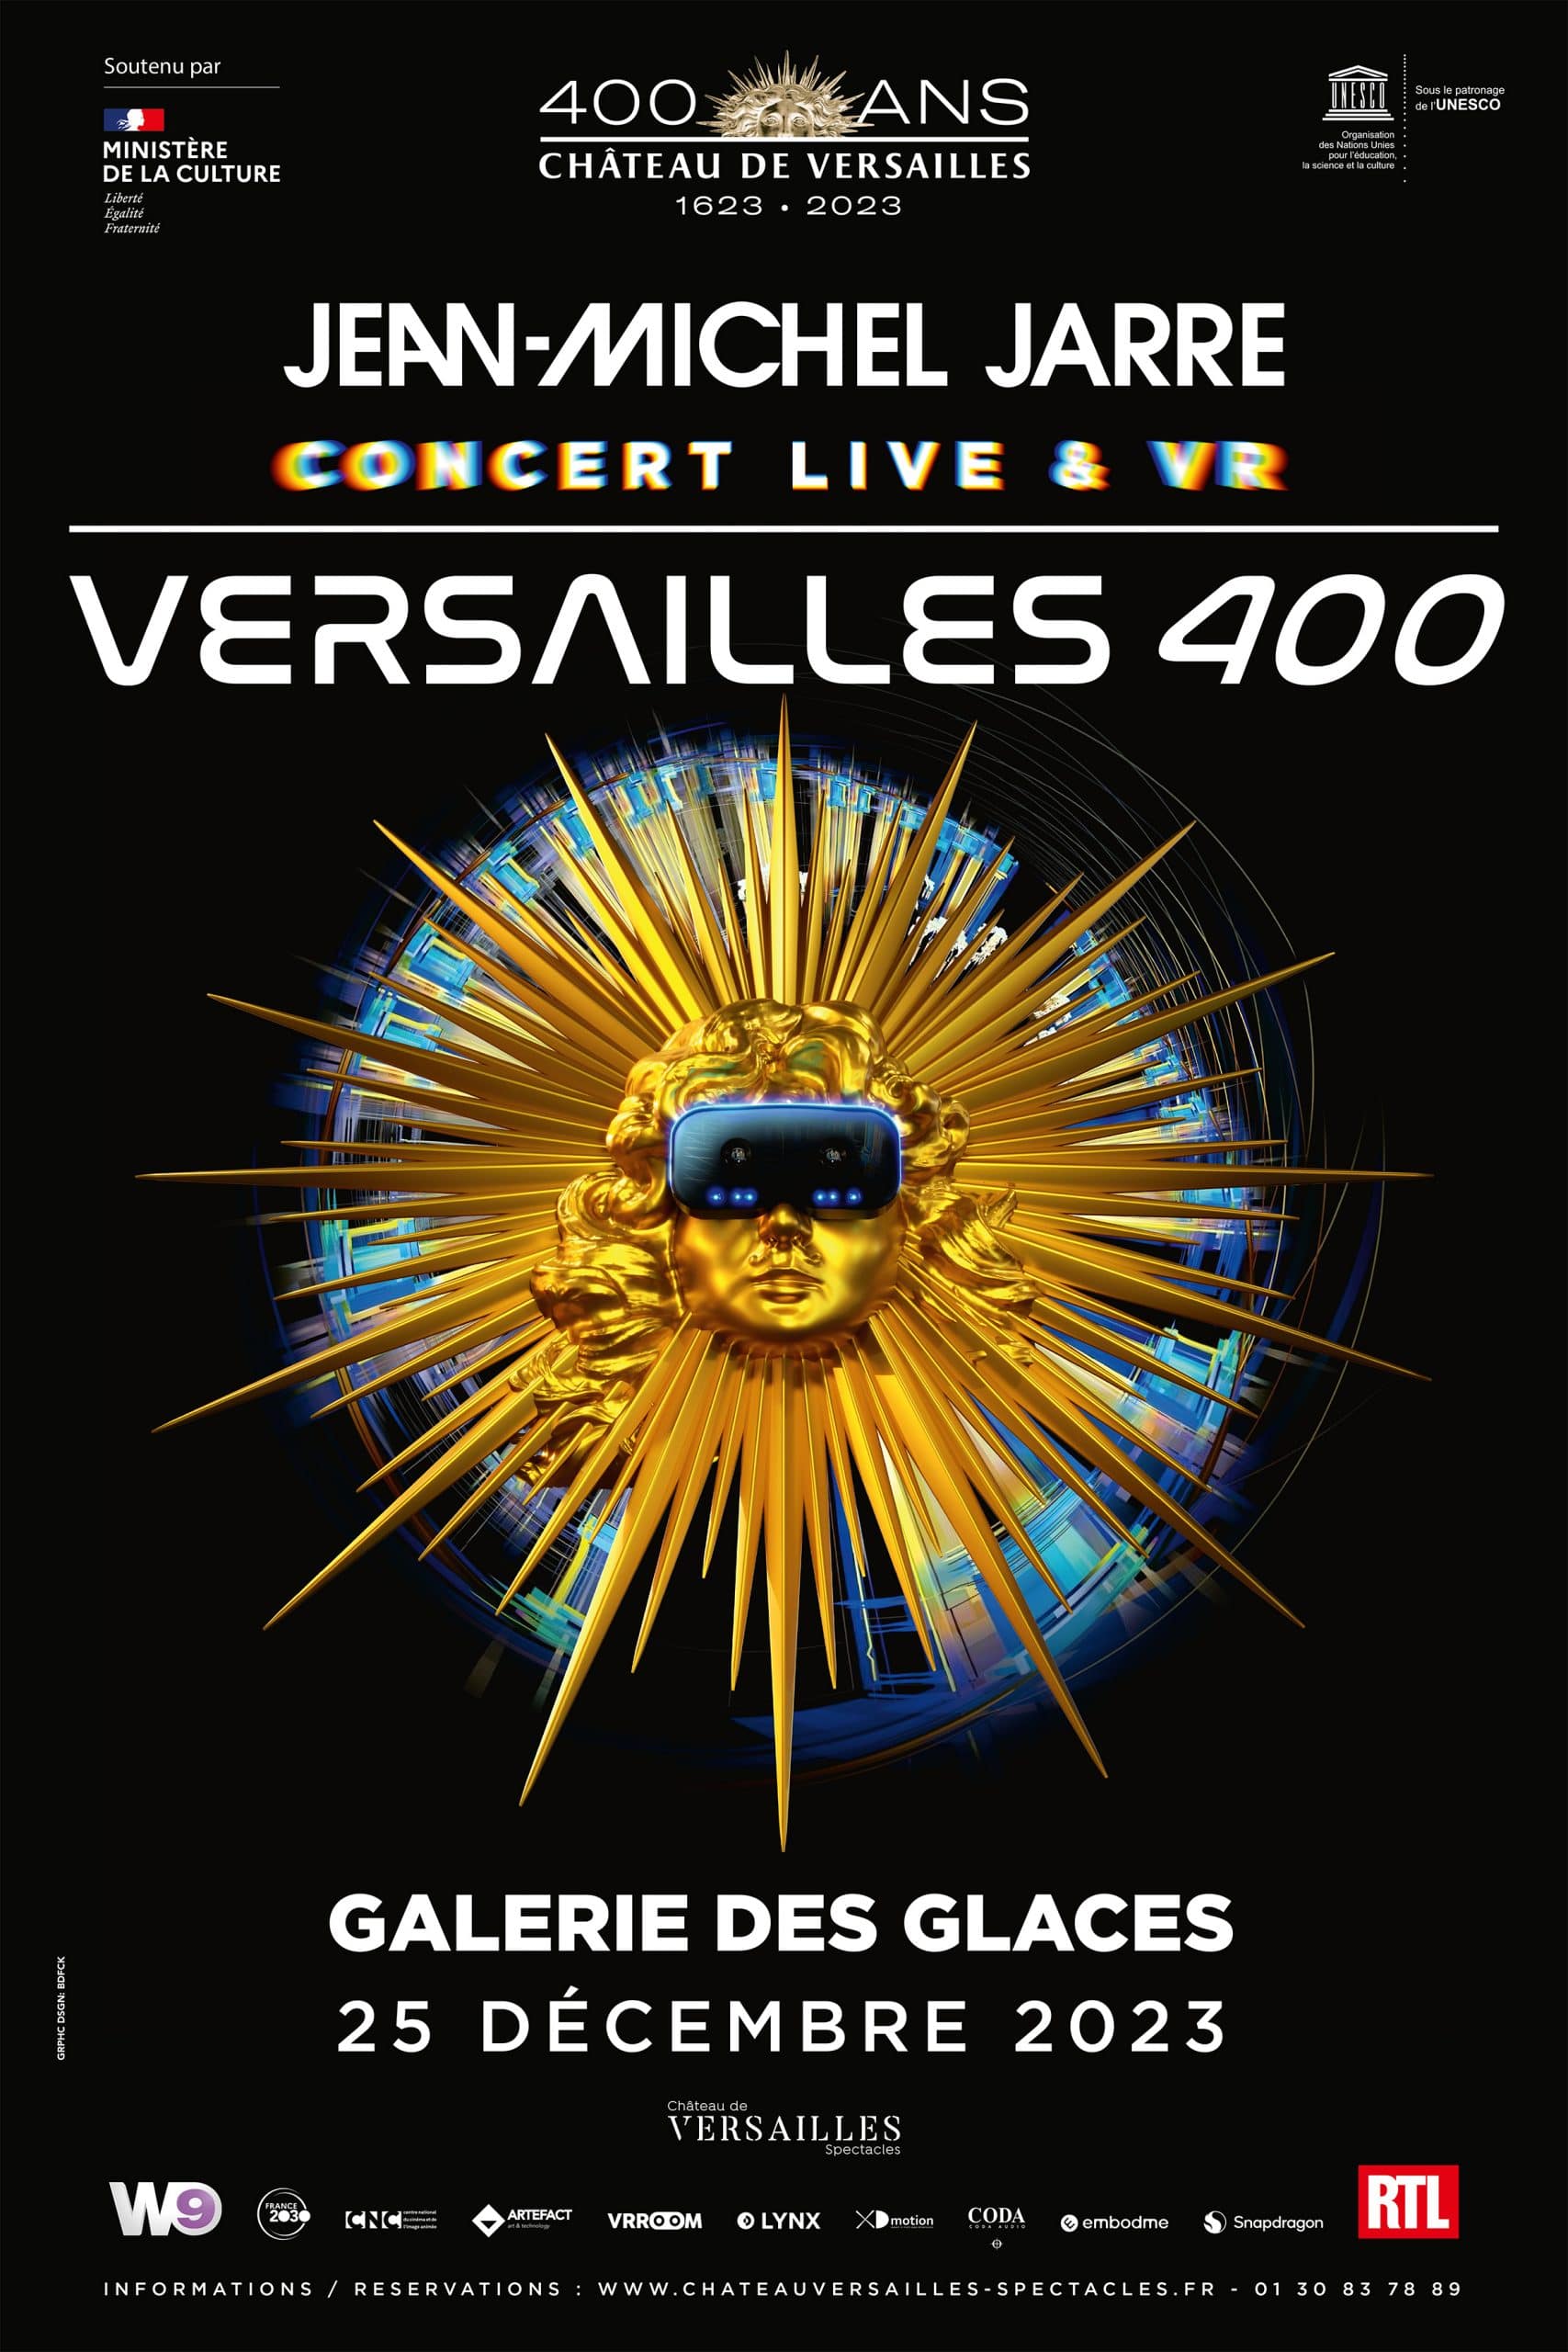 Jean-Michel Jarre célèbre les 400 ans du Château de Versailles avec un concert-spectacle innovant